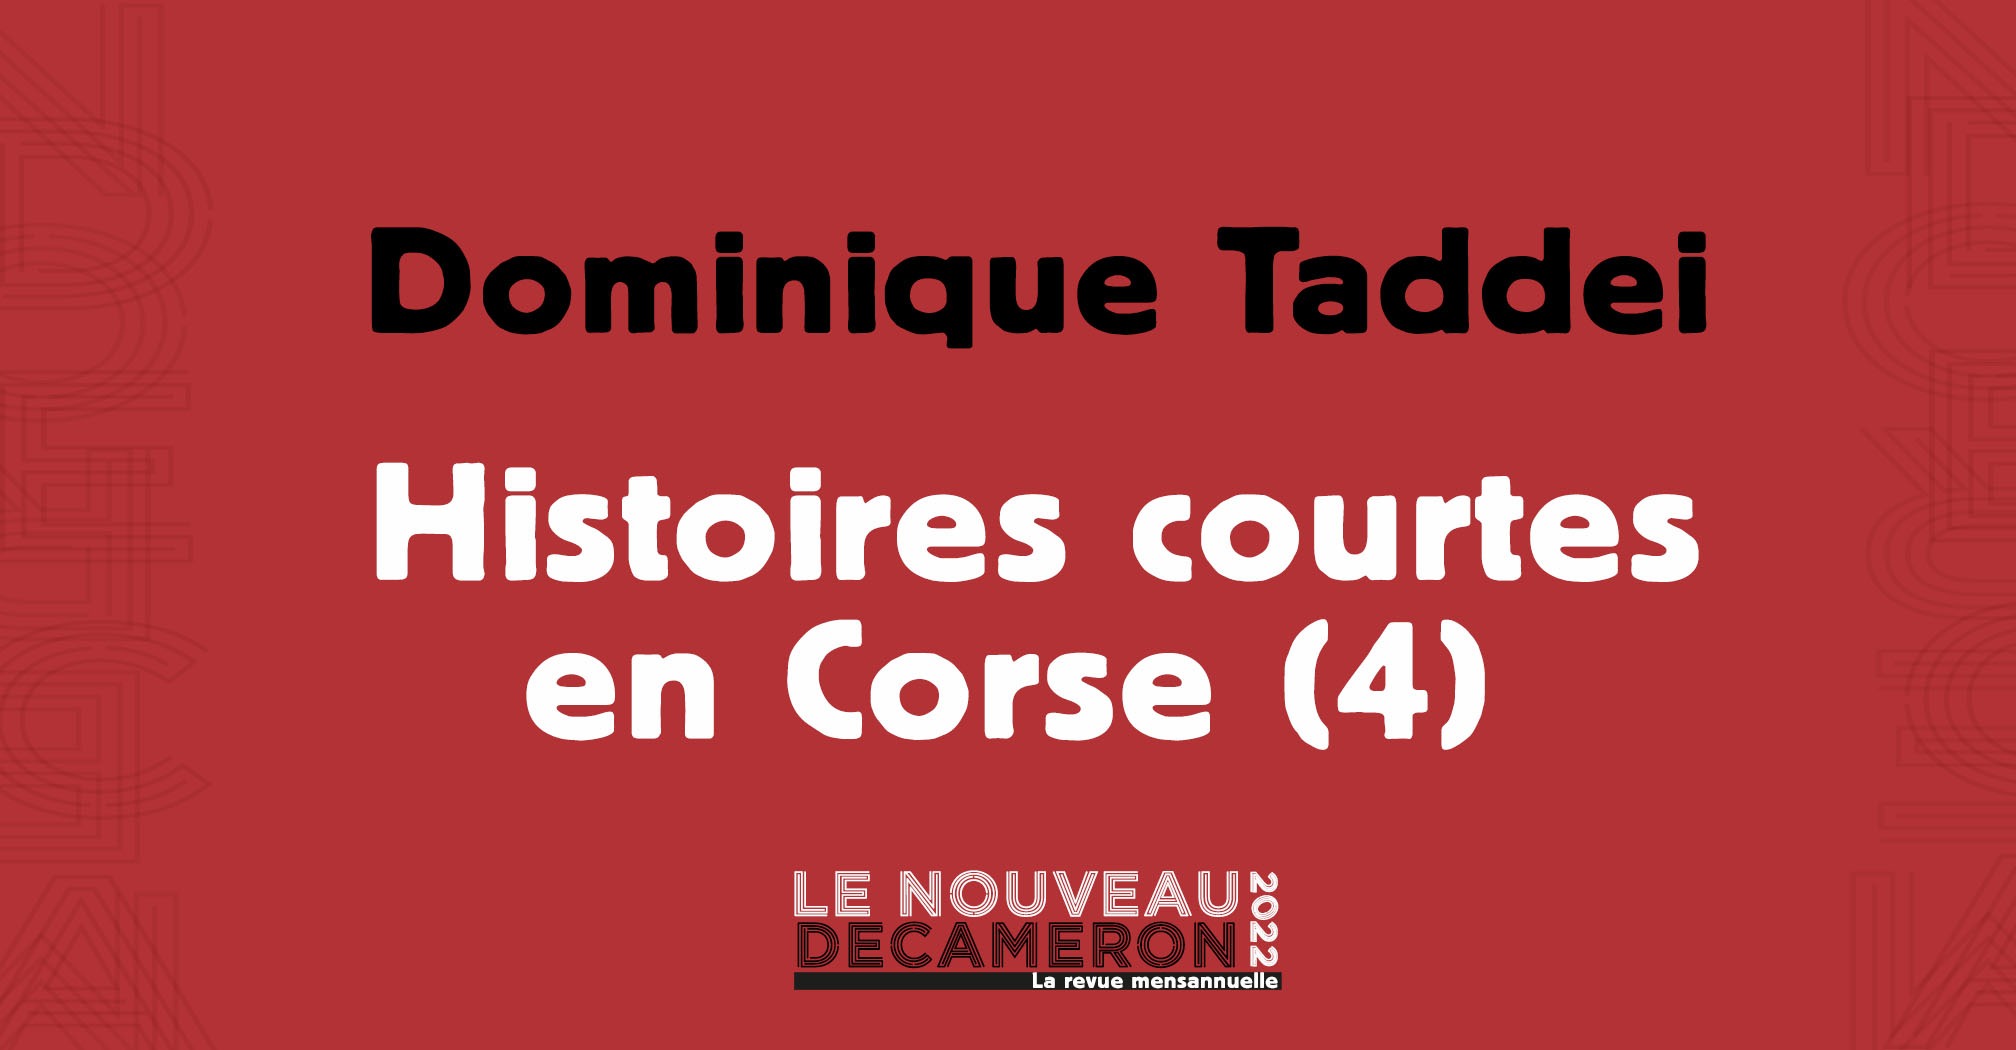 Dominique Taddei - Histoires courtes en Corse (4)